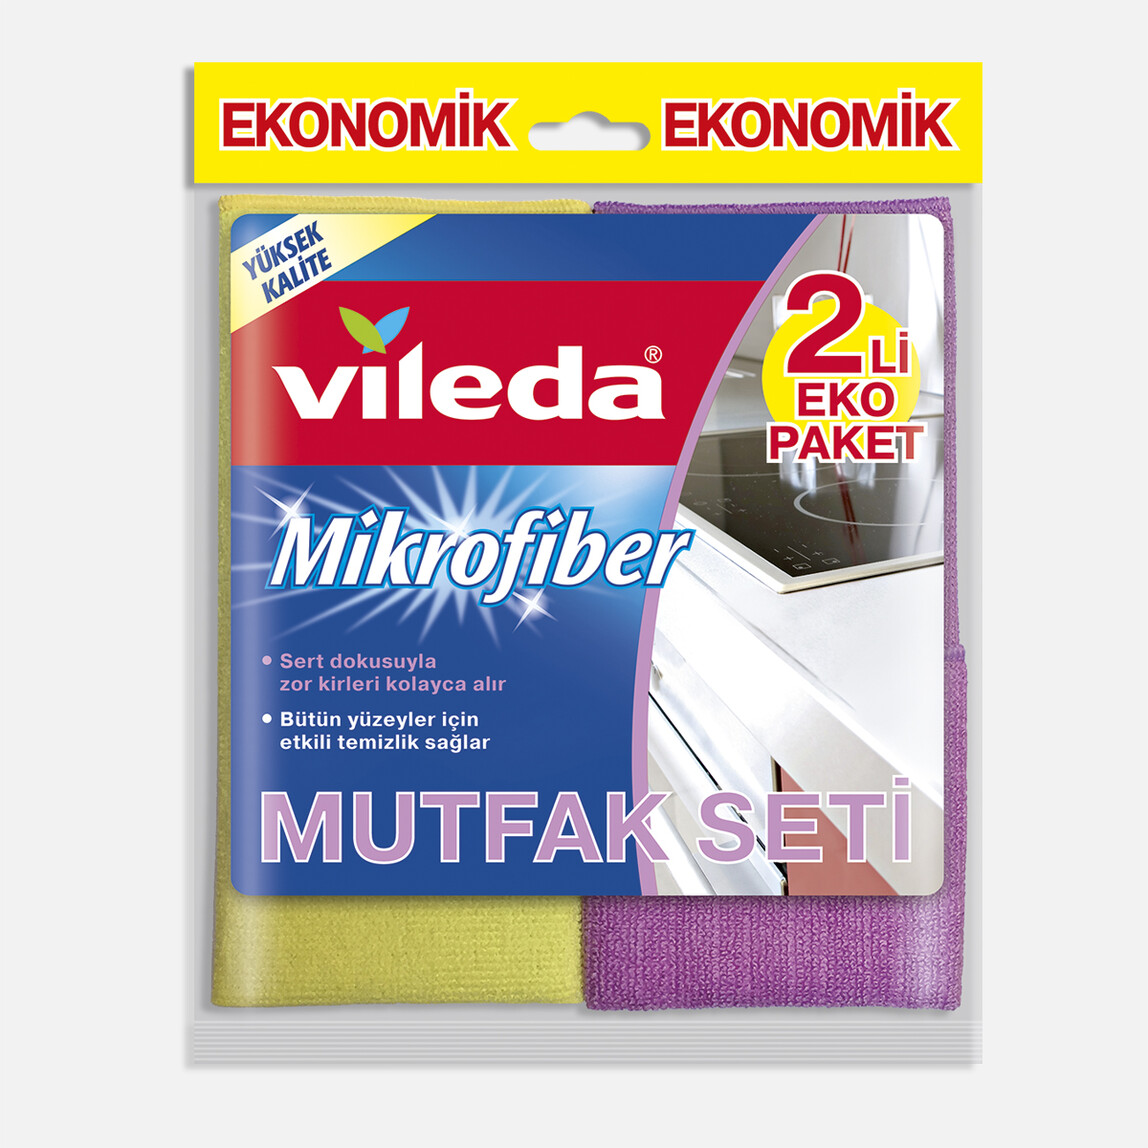    Vileda Mikrofiber Mutfak + Konfor Bez 2'li Paket  